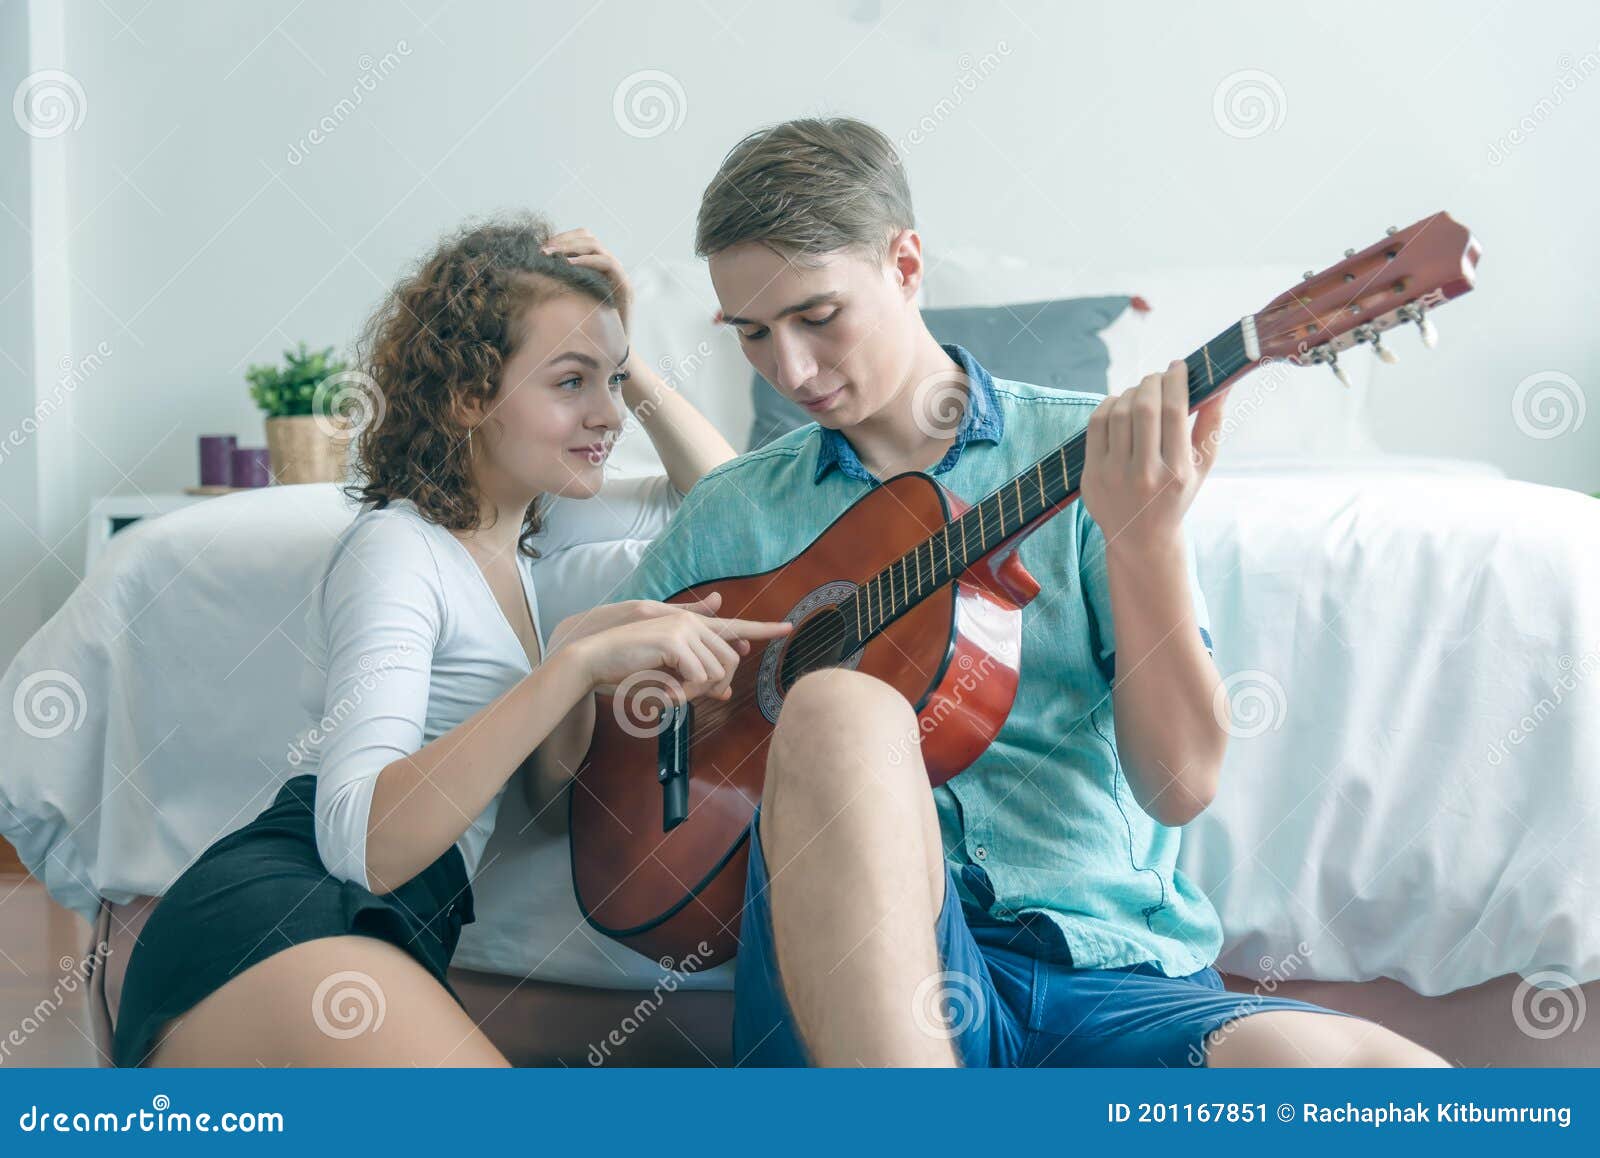 https://thumbs.dreamstime.com/z/pareja-joven-relajante-sentada-en-la-habitaci%C3%B3n-de-cama-tocando-guitarra-ac%C3%BAstica-hermosa-mujer-viendo-su-novio-y-un-hombre-201167851.jpg